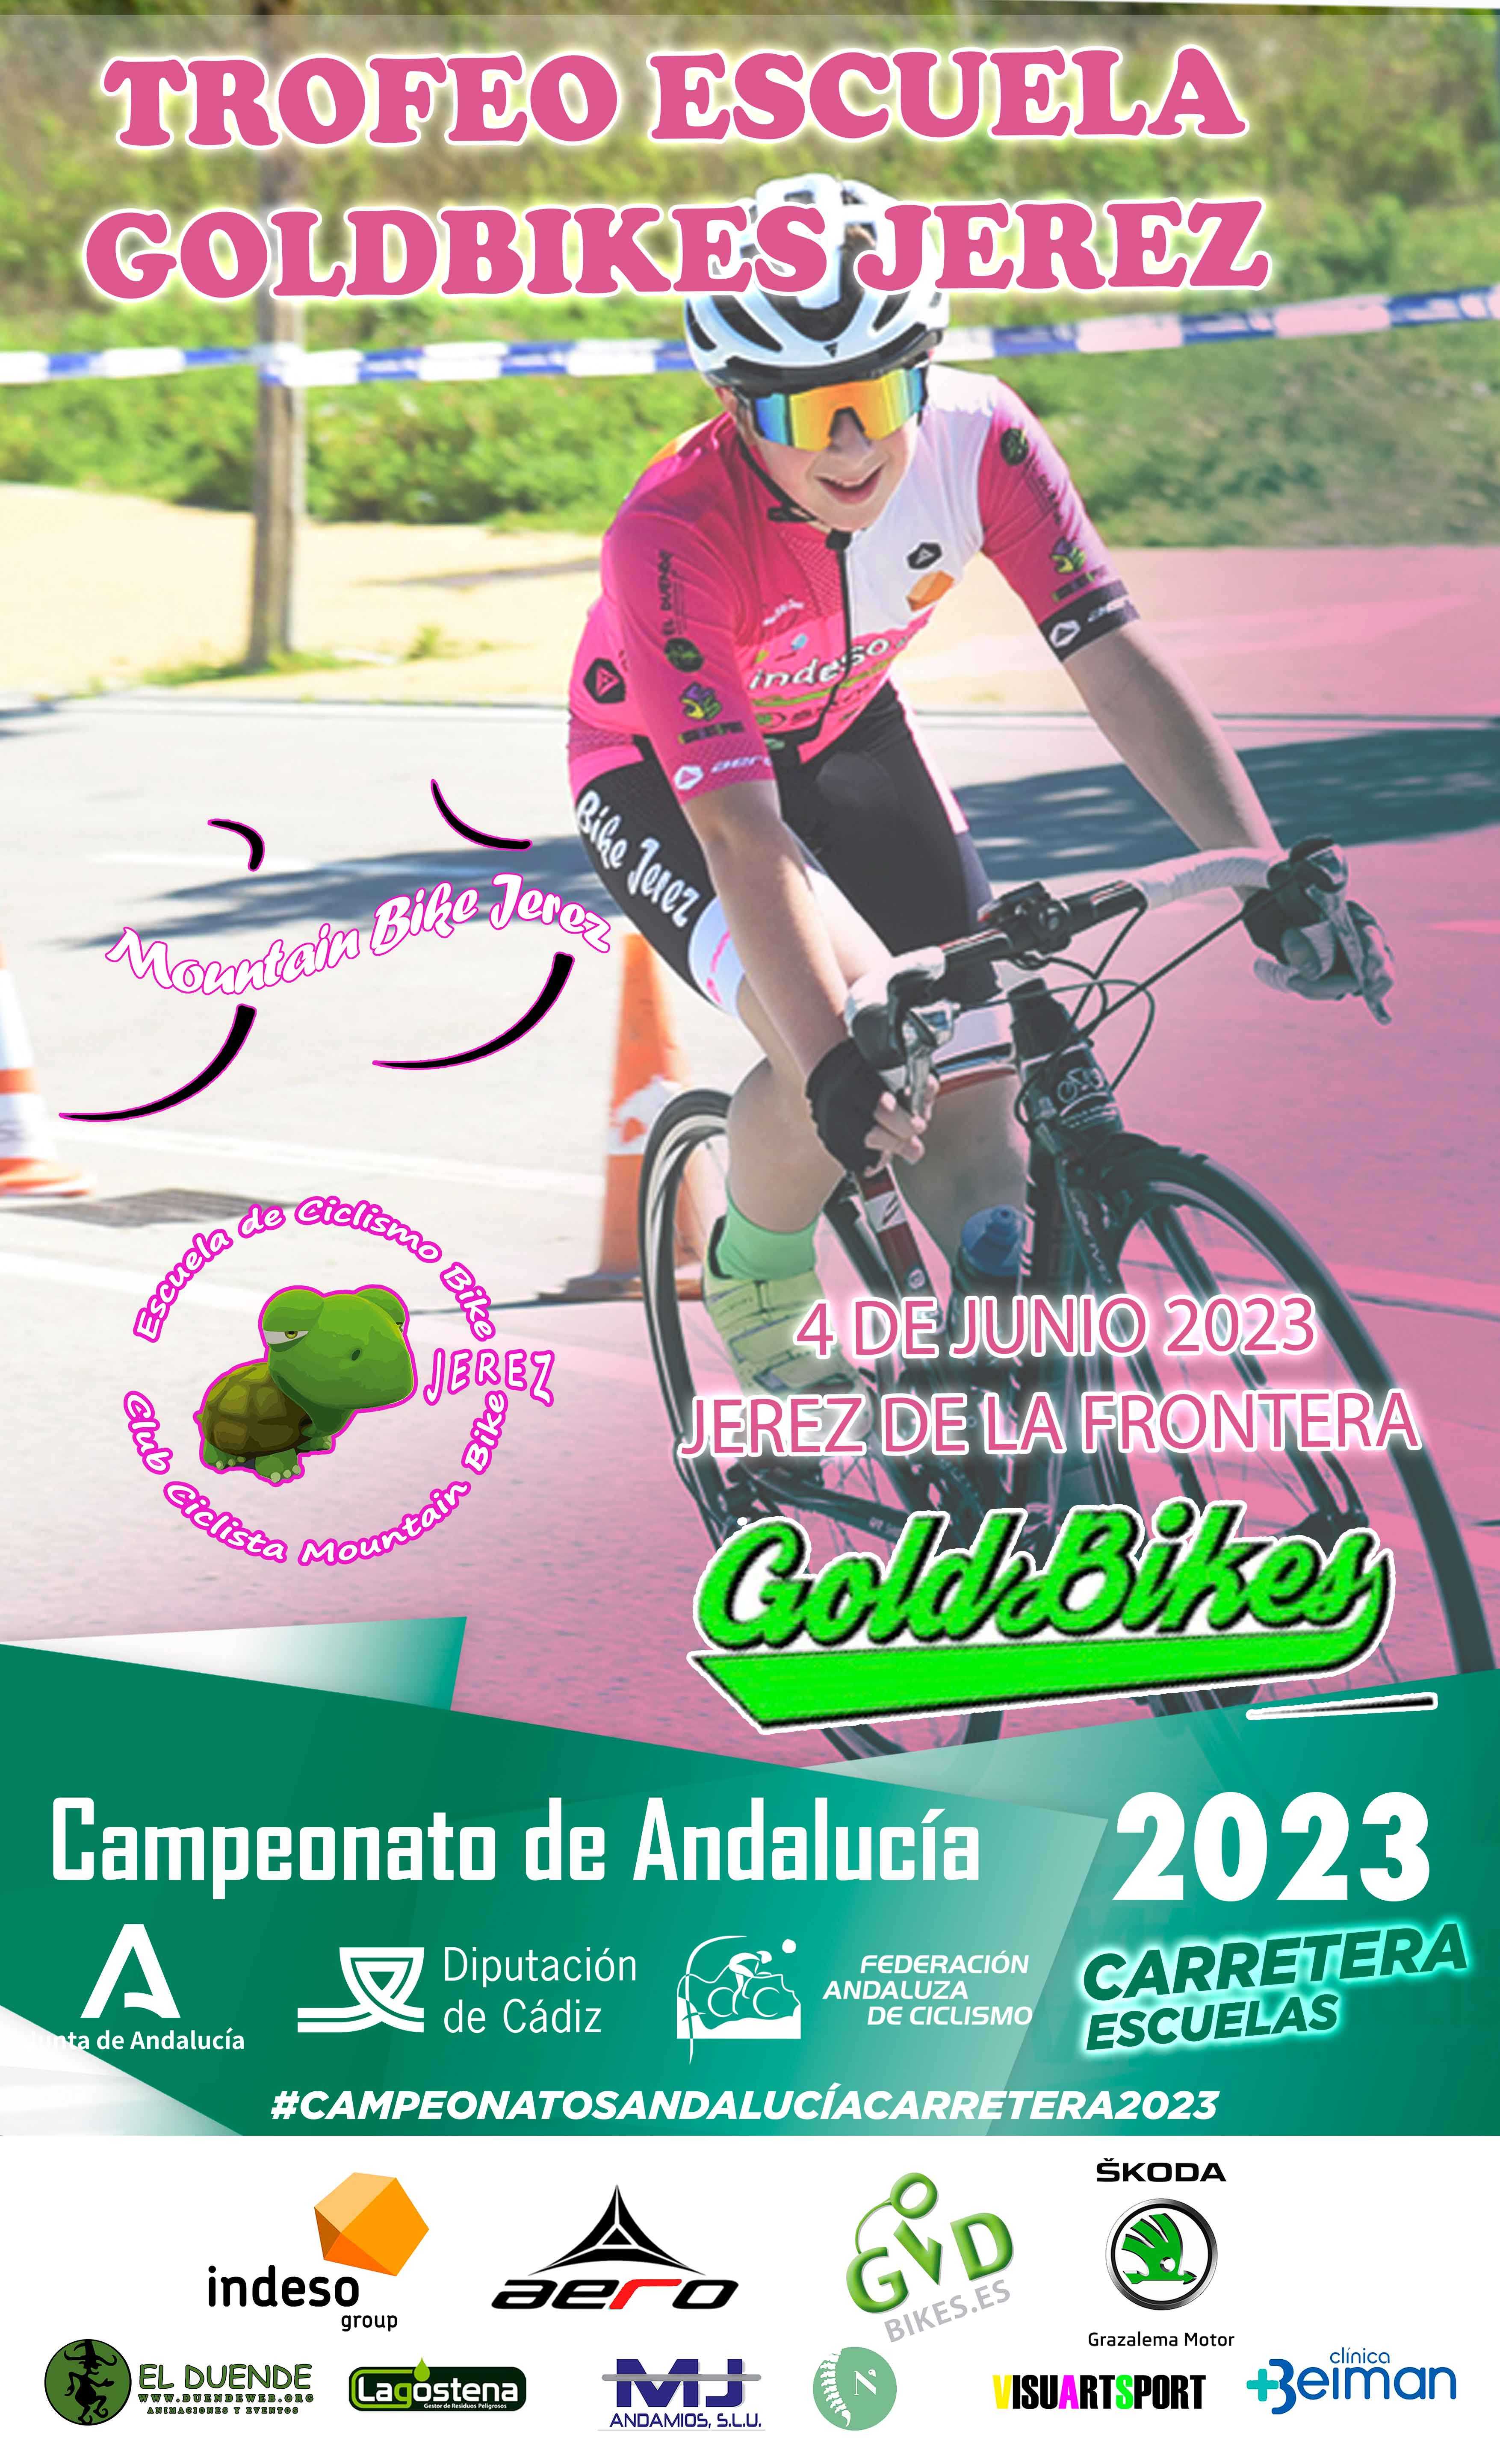 Jerez de la Frontera aguarda al Campeonato Andalucía Carretera Escuelas 2023